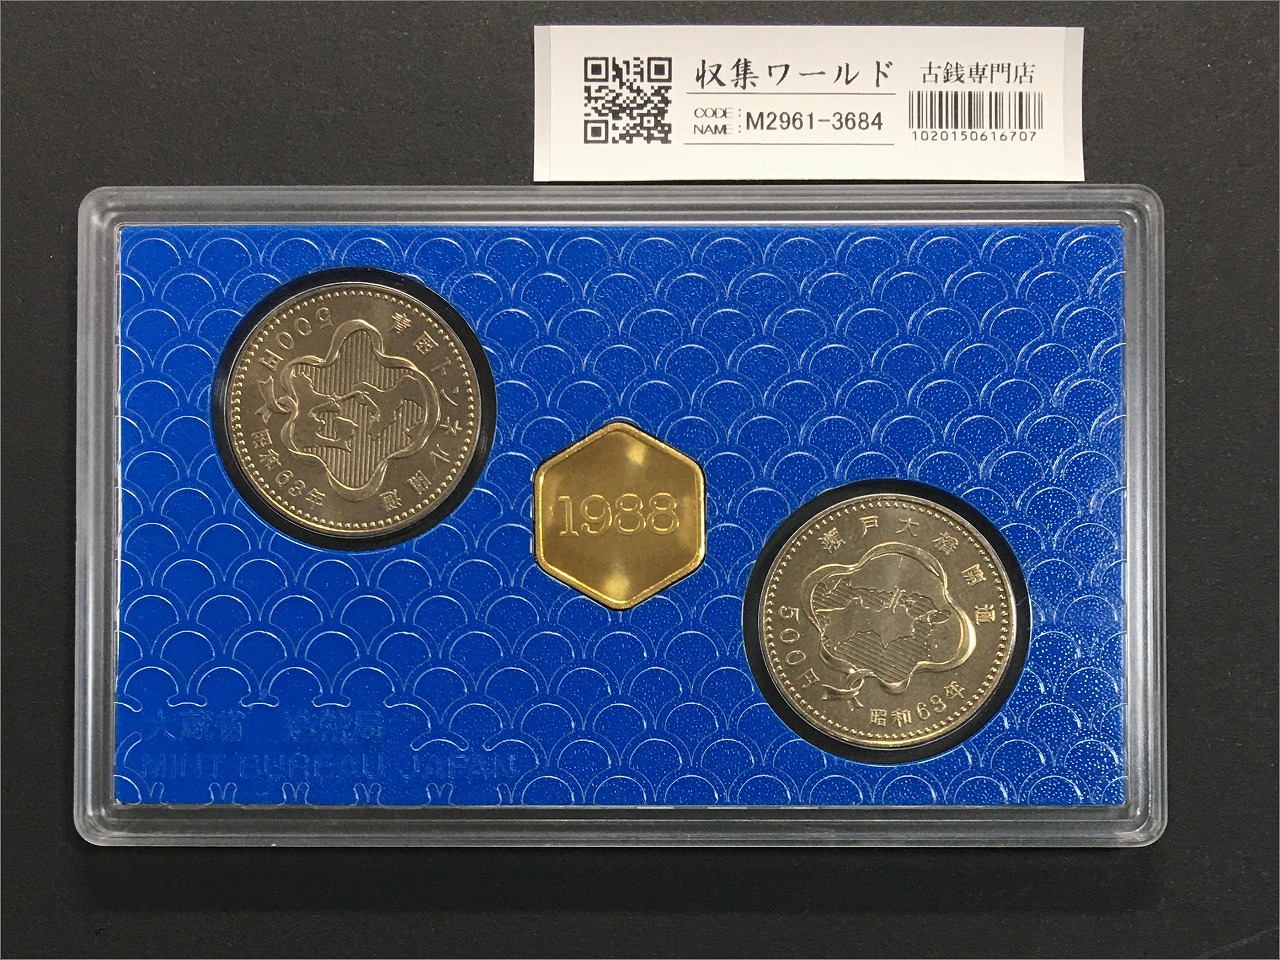 坂本龍馬 純銀メダル入り 平成19年銘 プルーフ貨幣セット | 収集ワールド